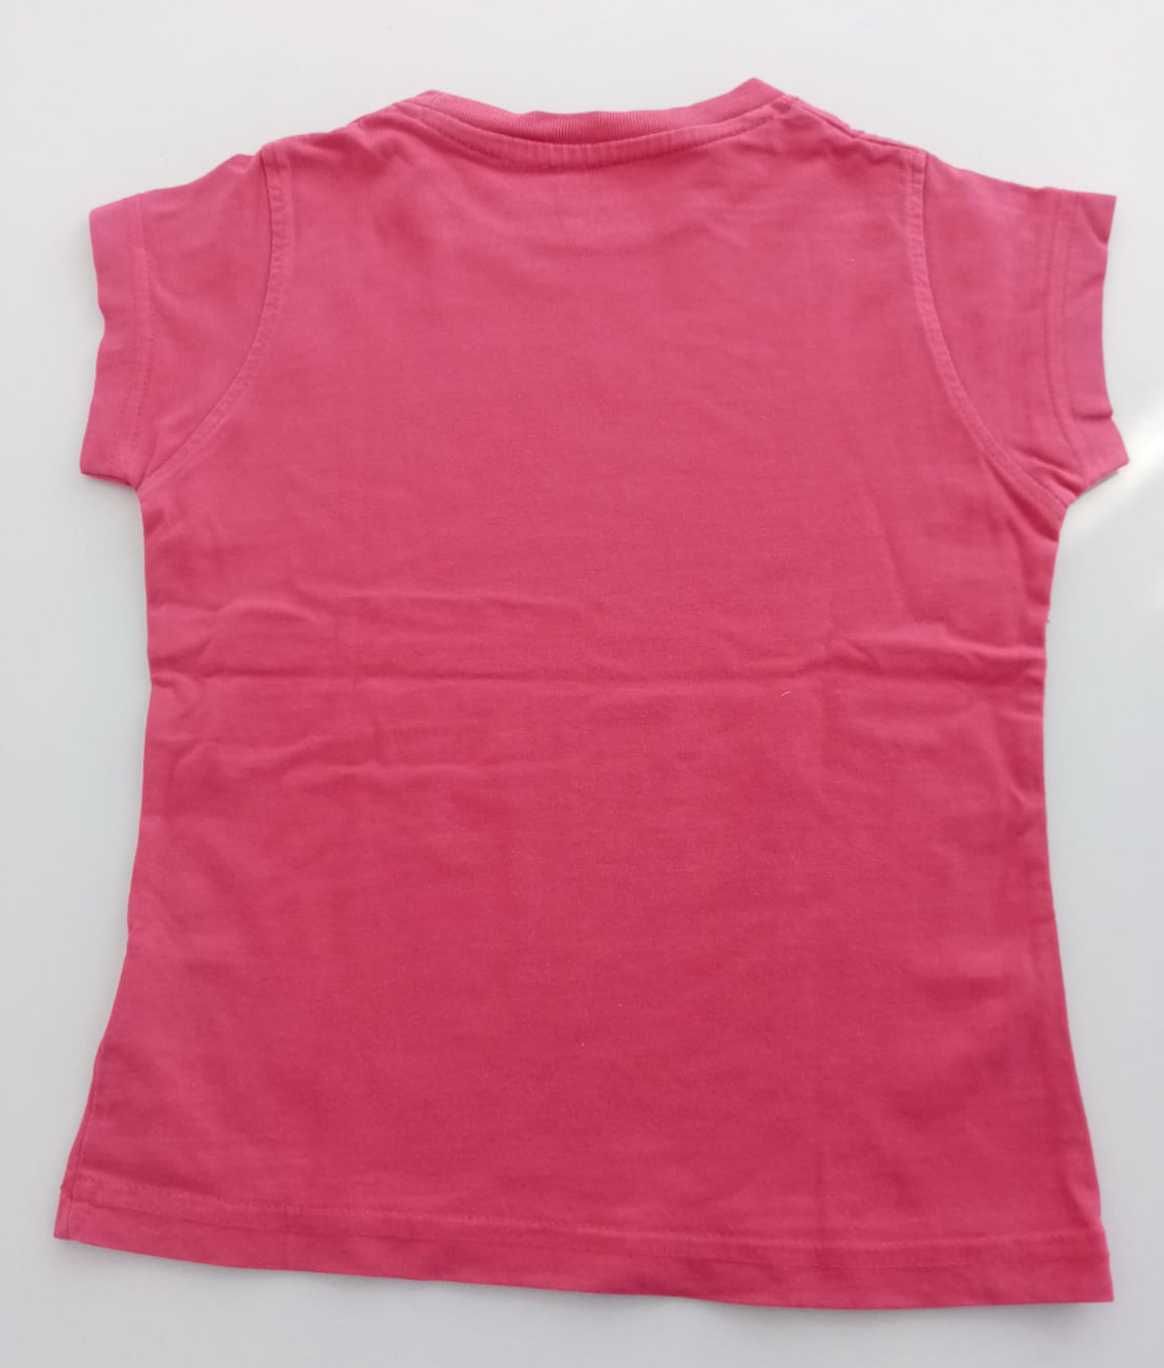 t-shirt: 4 / 5 anos, cor-de-rosa avermelhada, Zippy, só 1€!